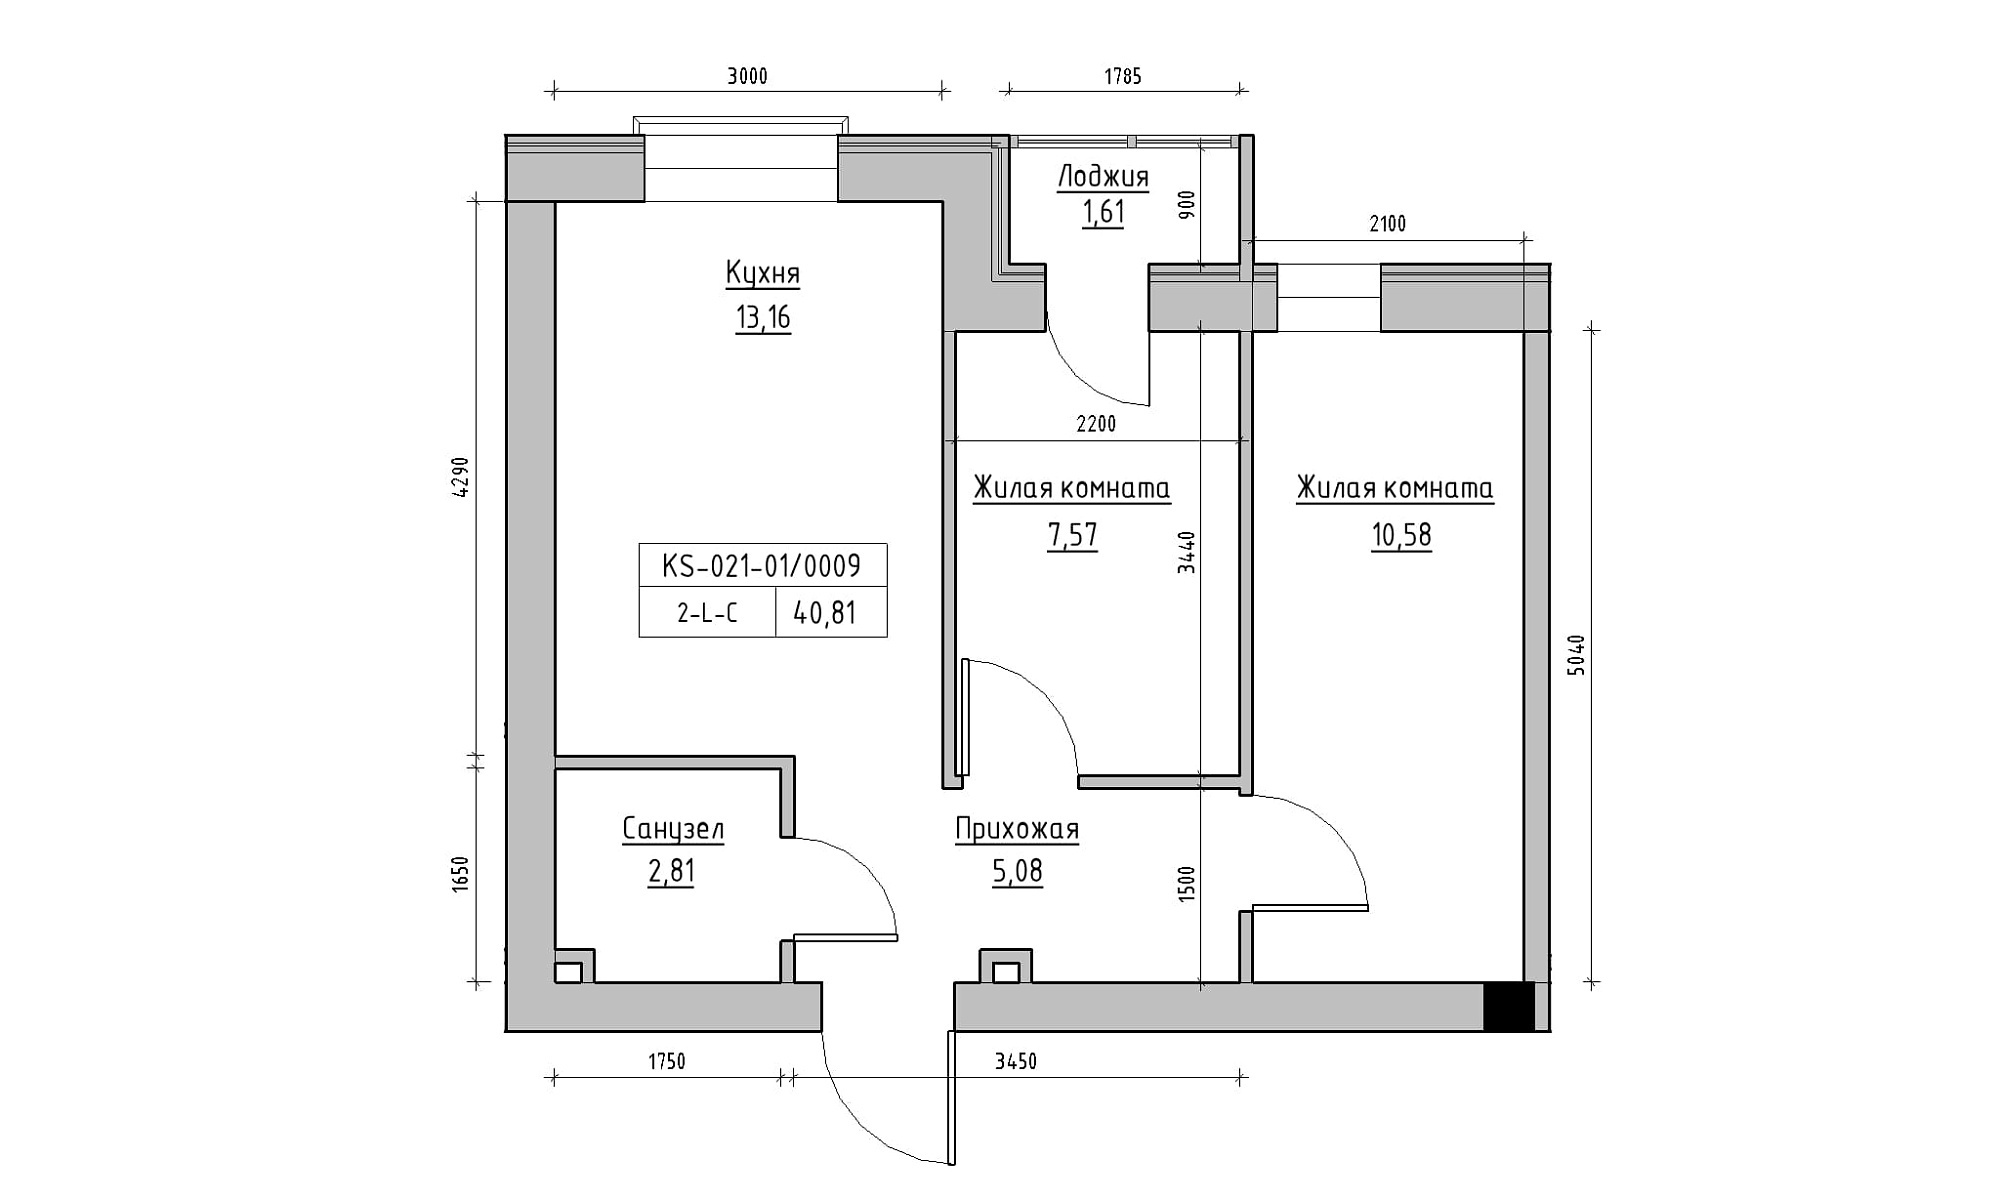 Планировка 2-к квартира площей 40.81м2, KS-021-01/0009.